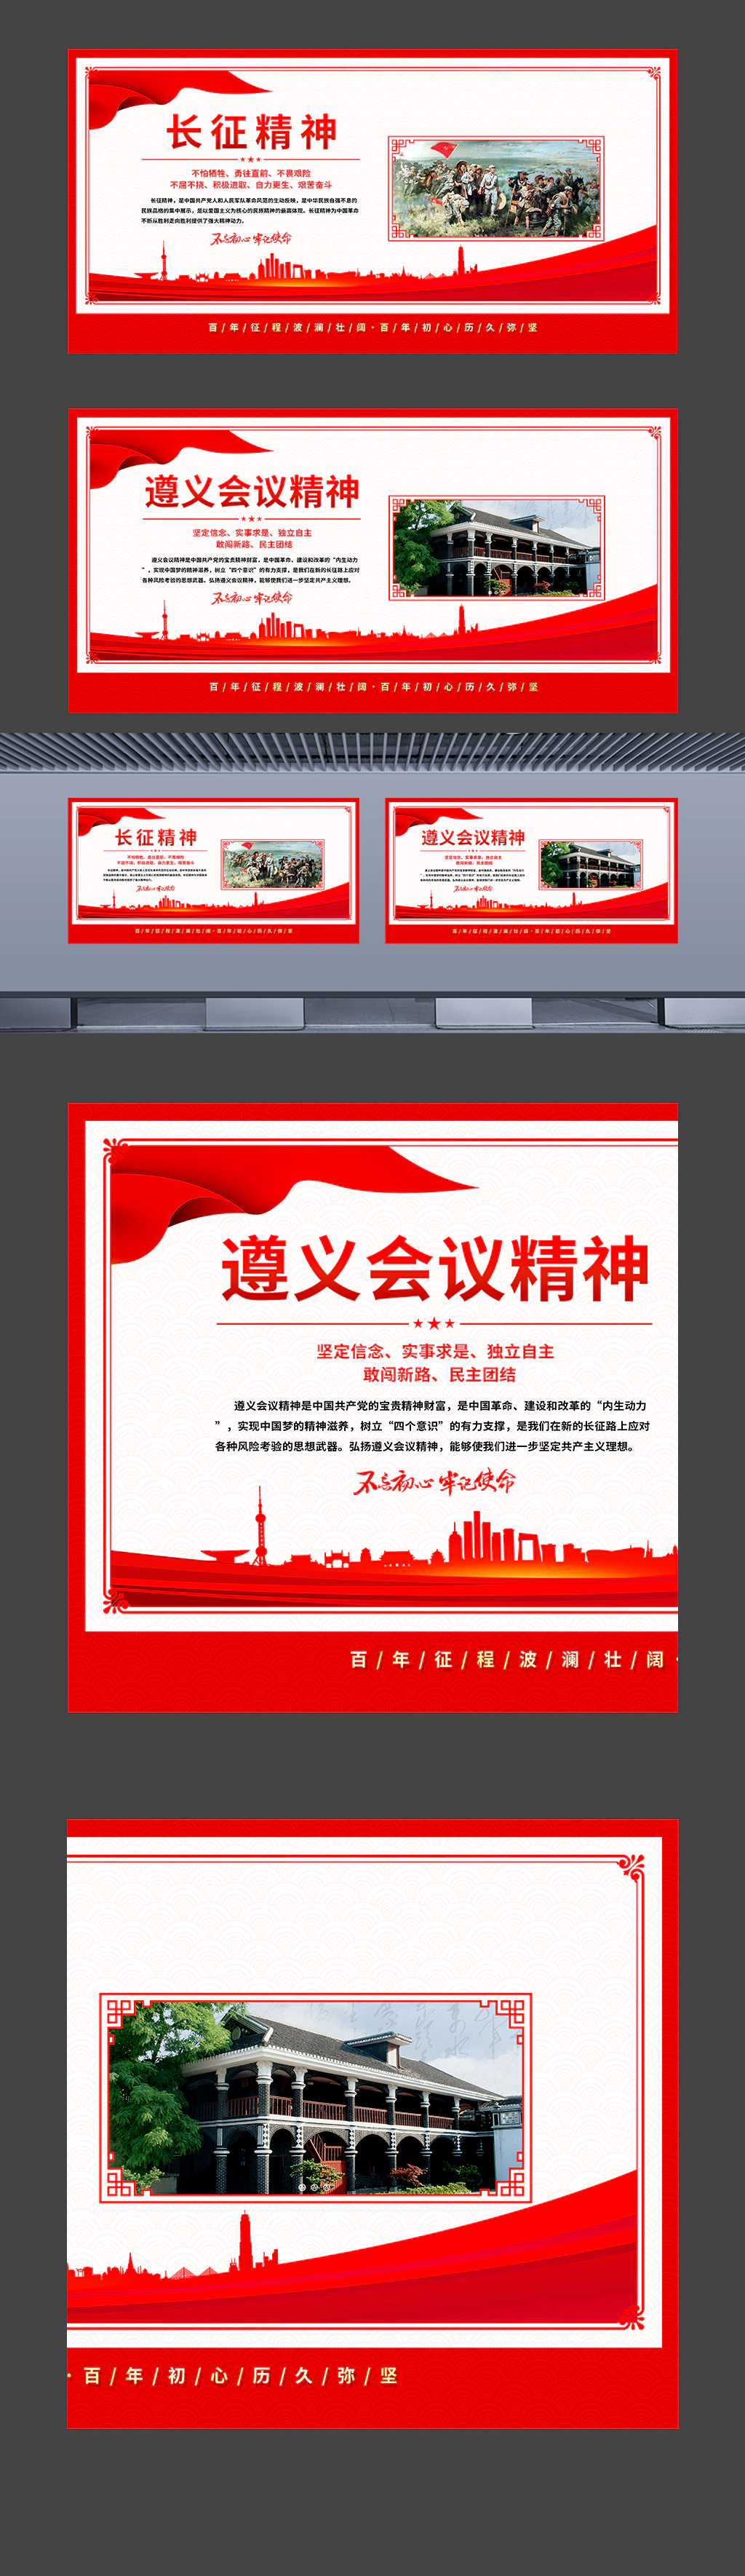 中国精神之长征精神遵义会议精神挂图海报